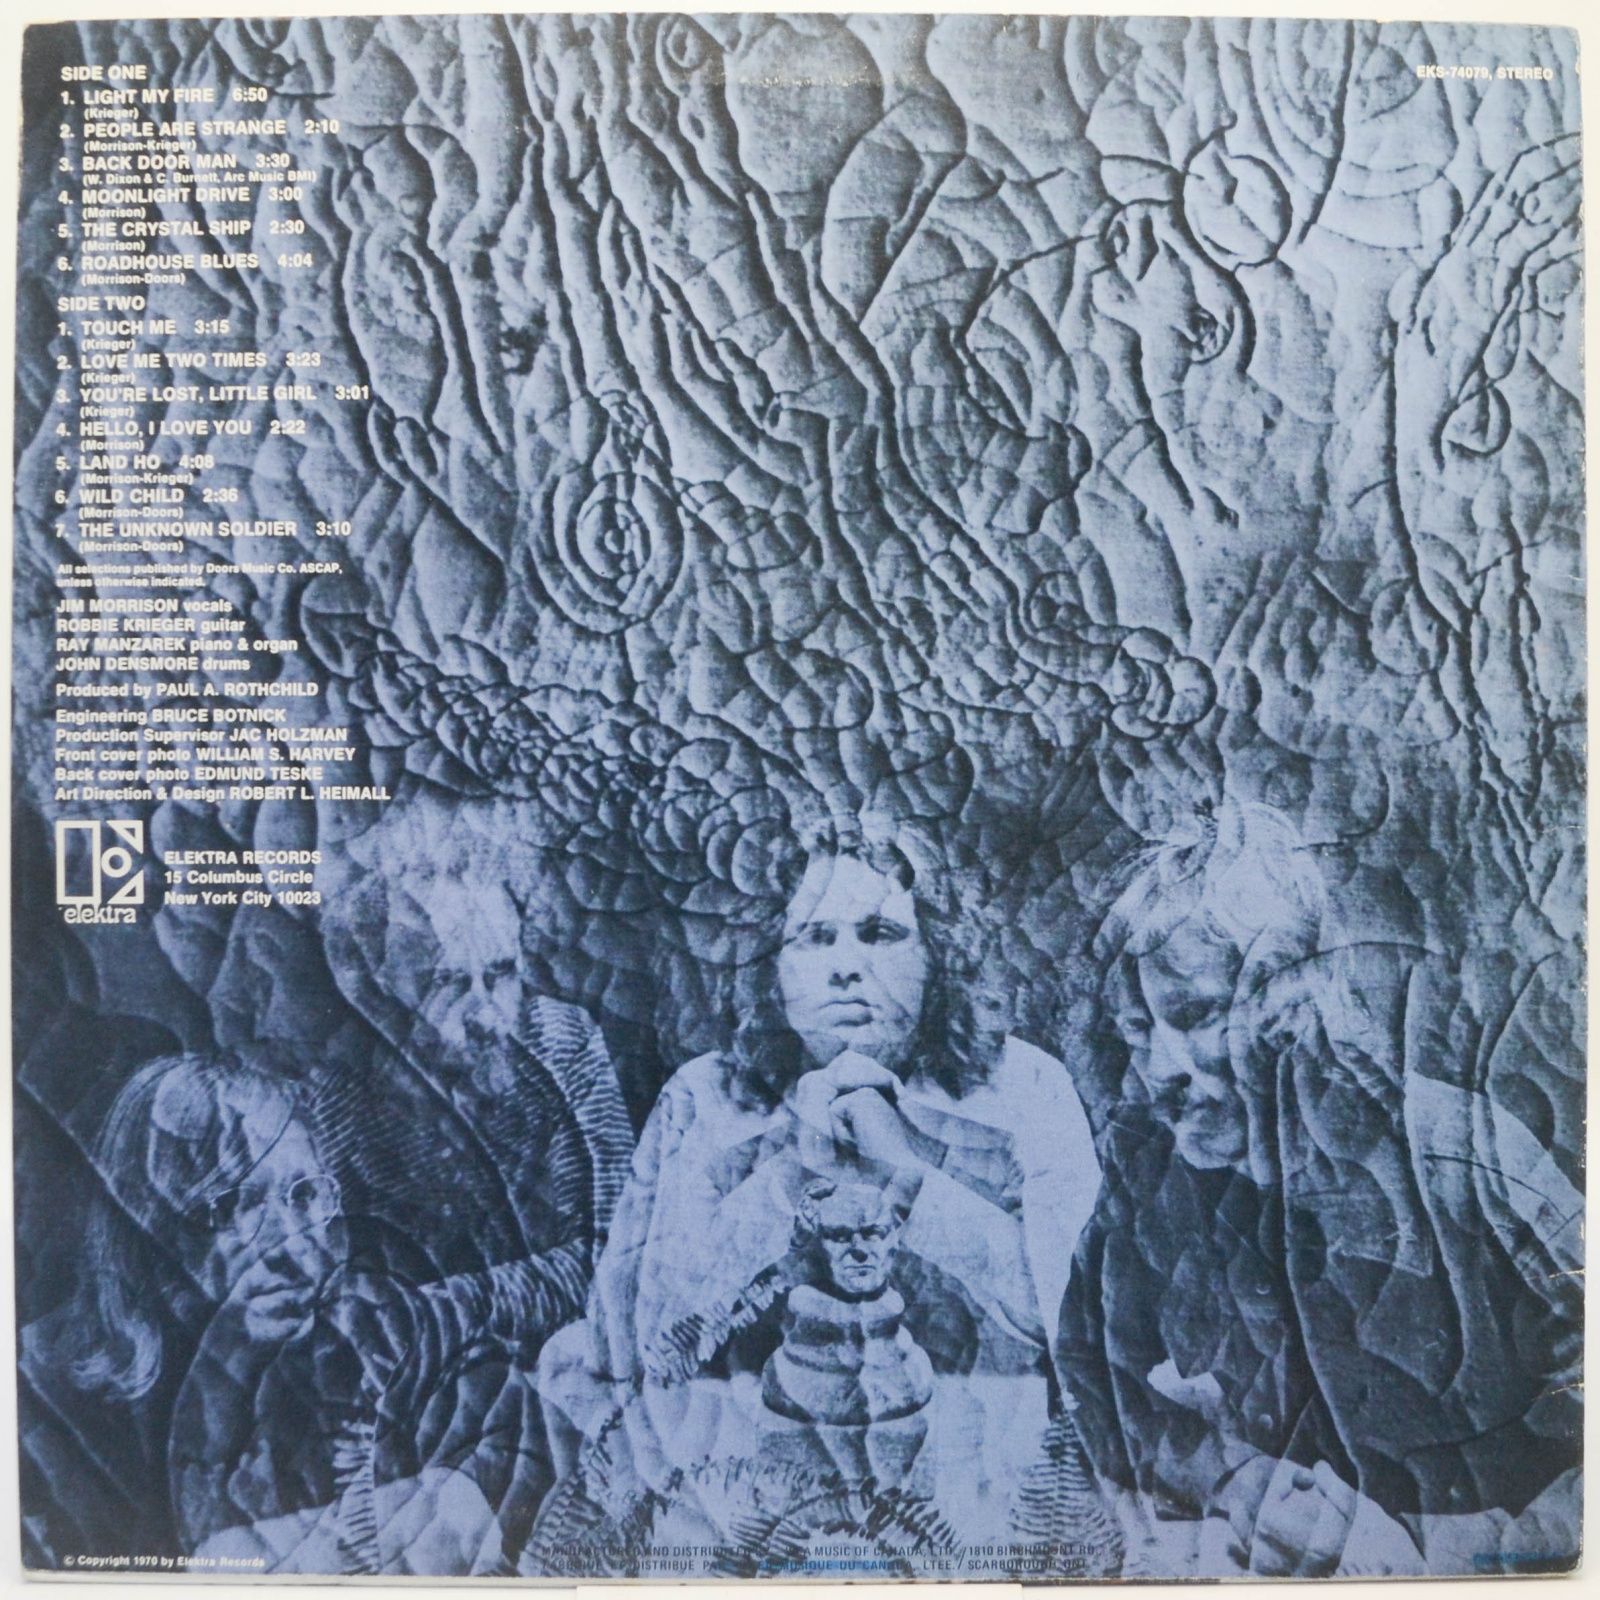 Doors — 13, 1970